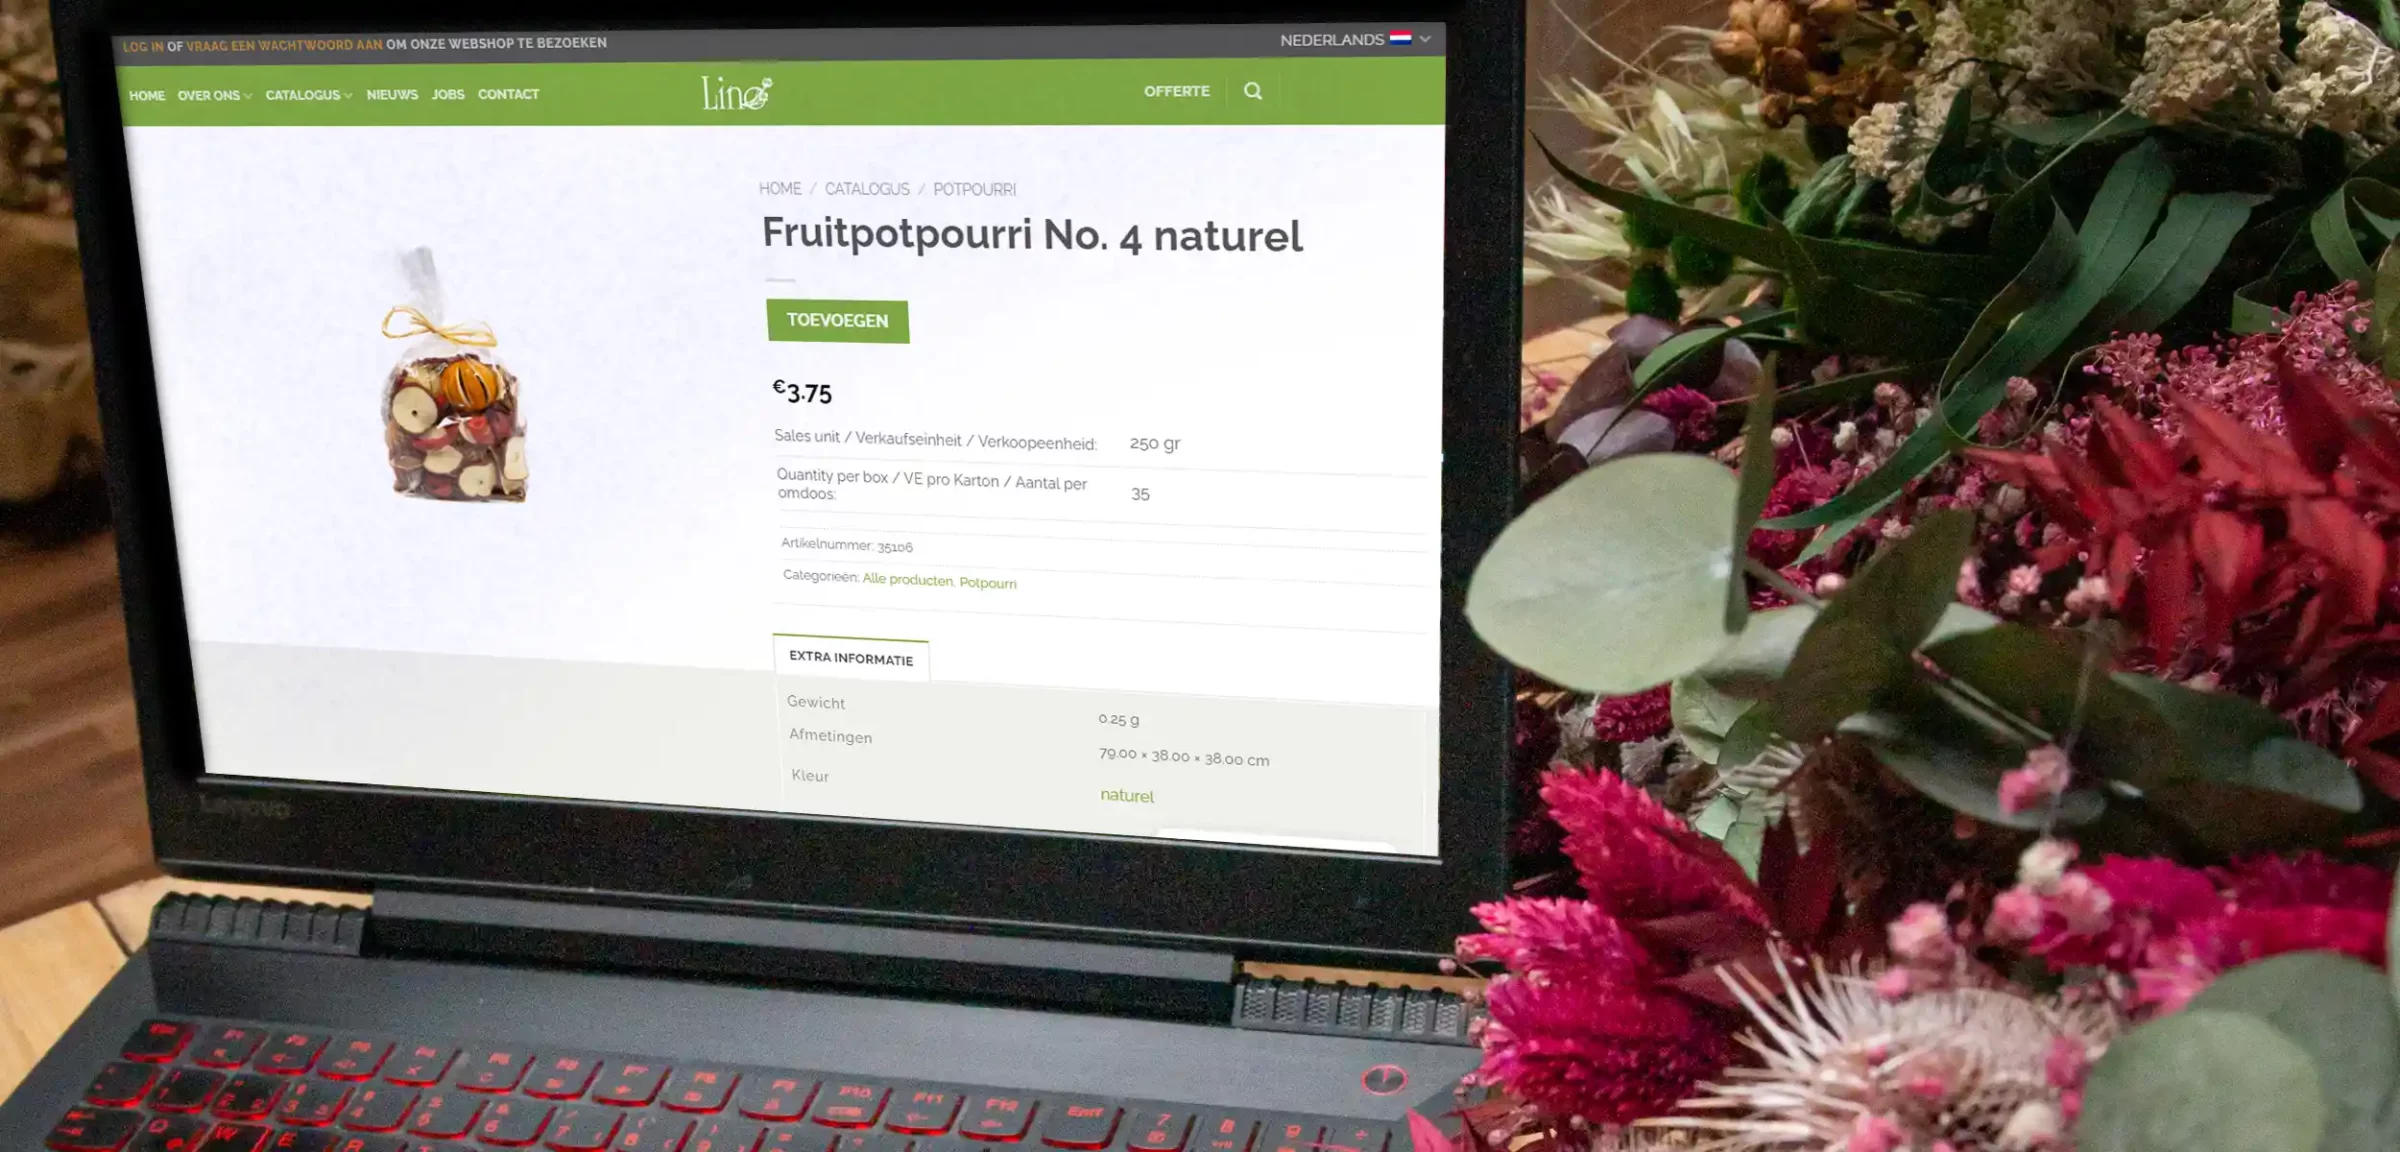 Afbeelding van de webshop te zien op een laptop omringd door droogbloemen.